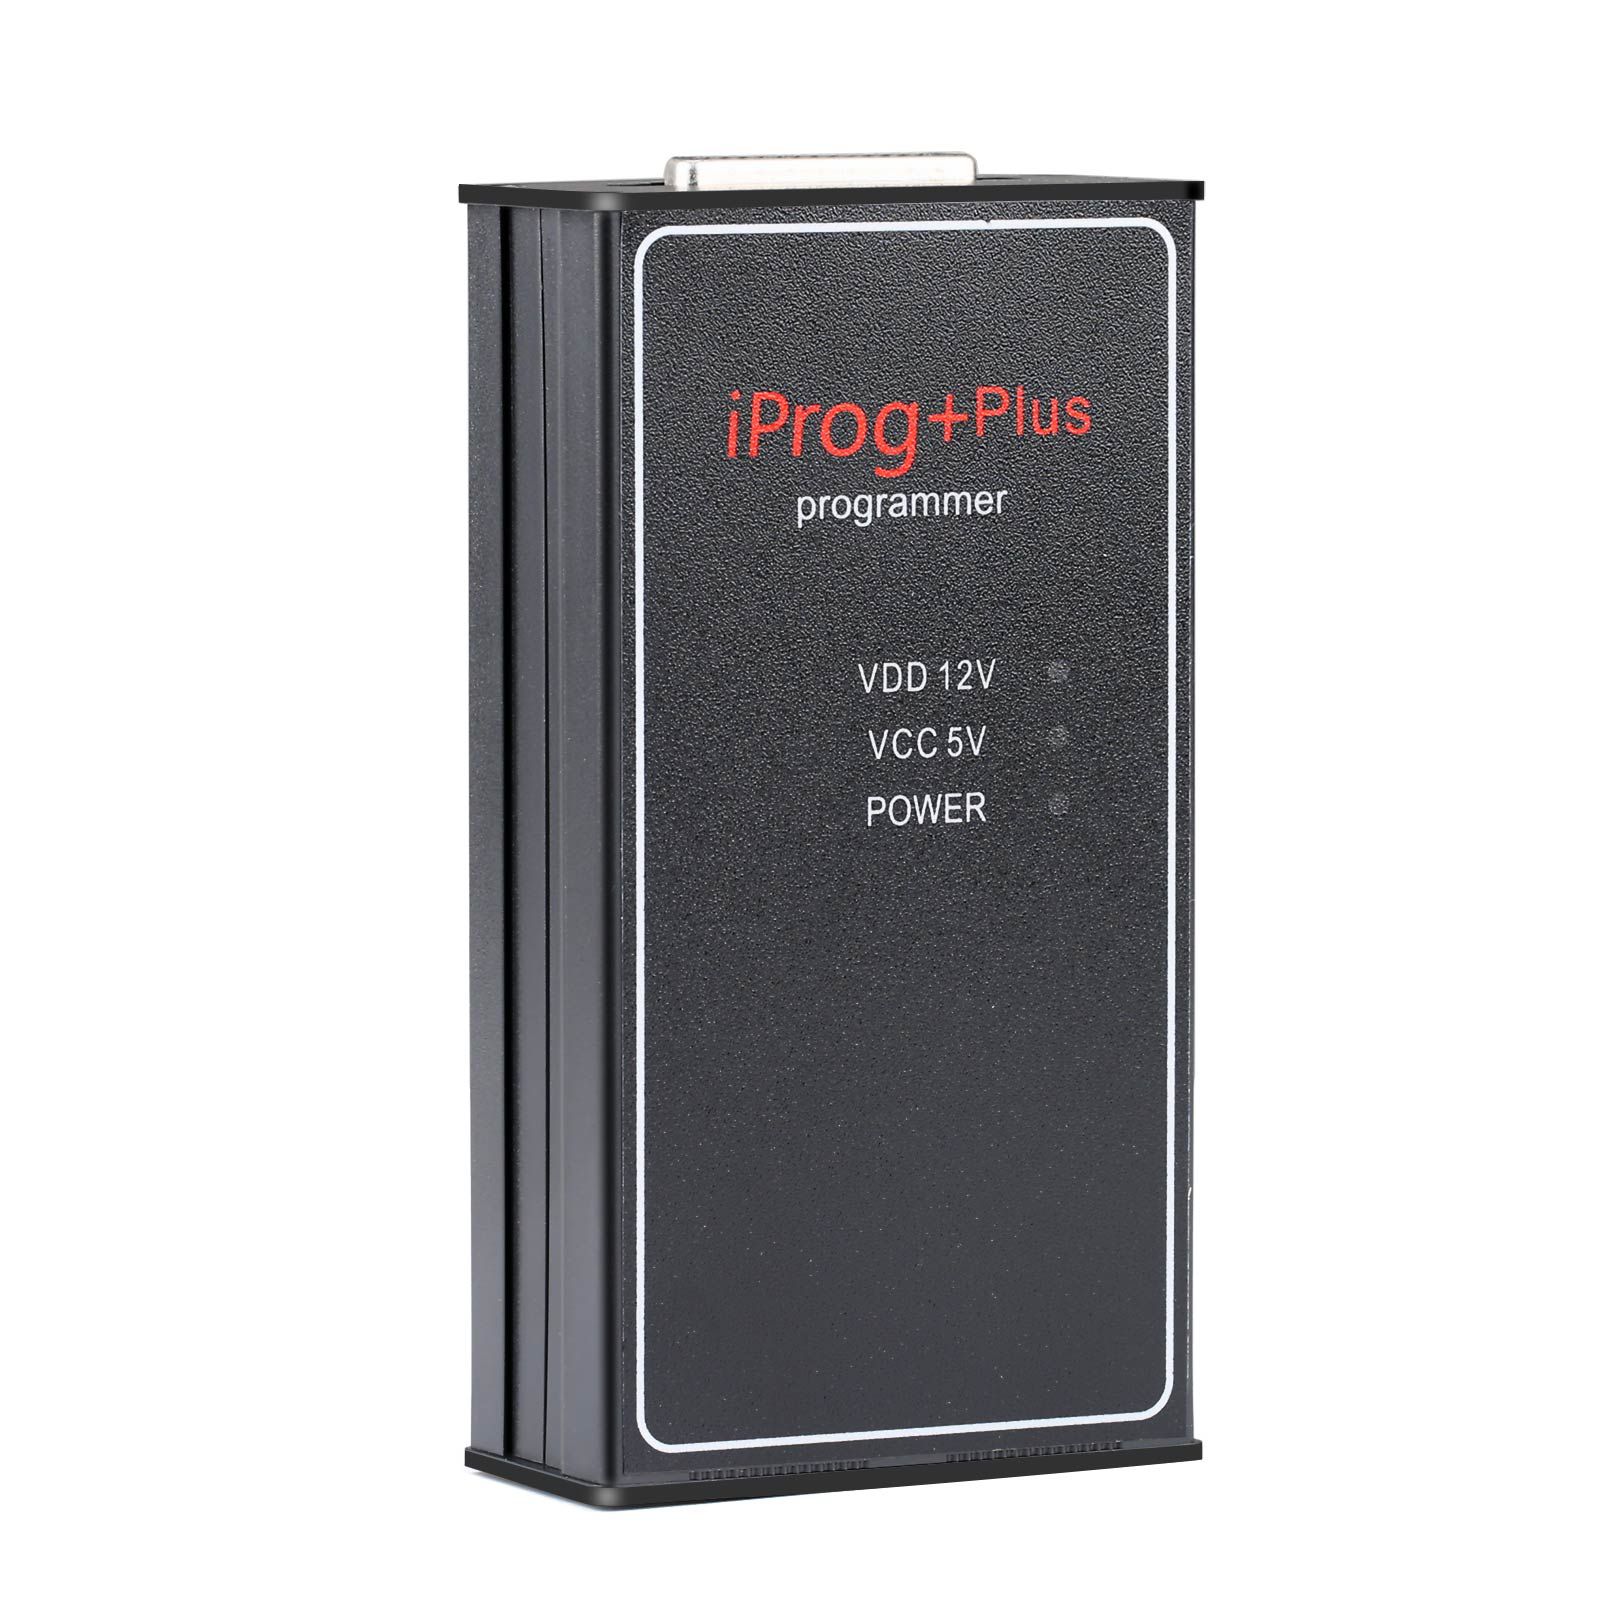 La configuración completa del programador v87 iprog + PLUS Pro admite immo + corrección de kilometraje + reinicio del Airbag